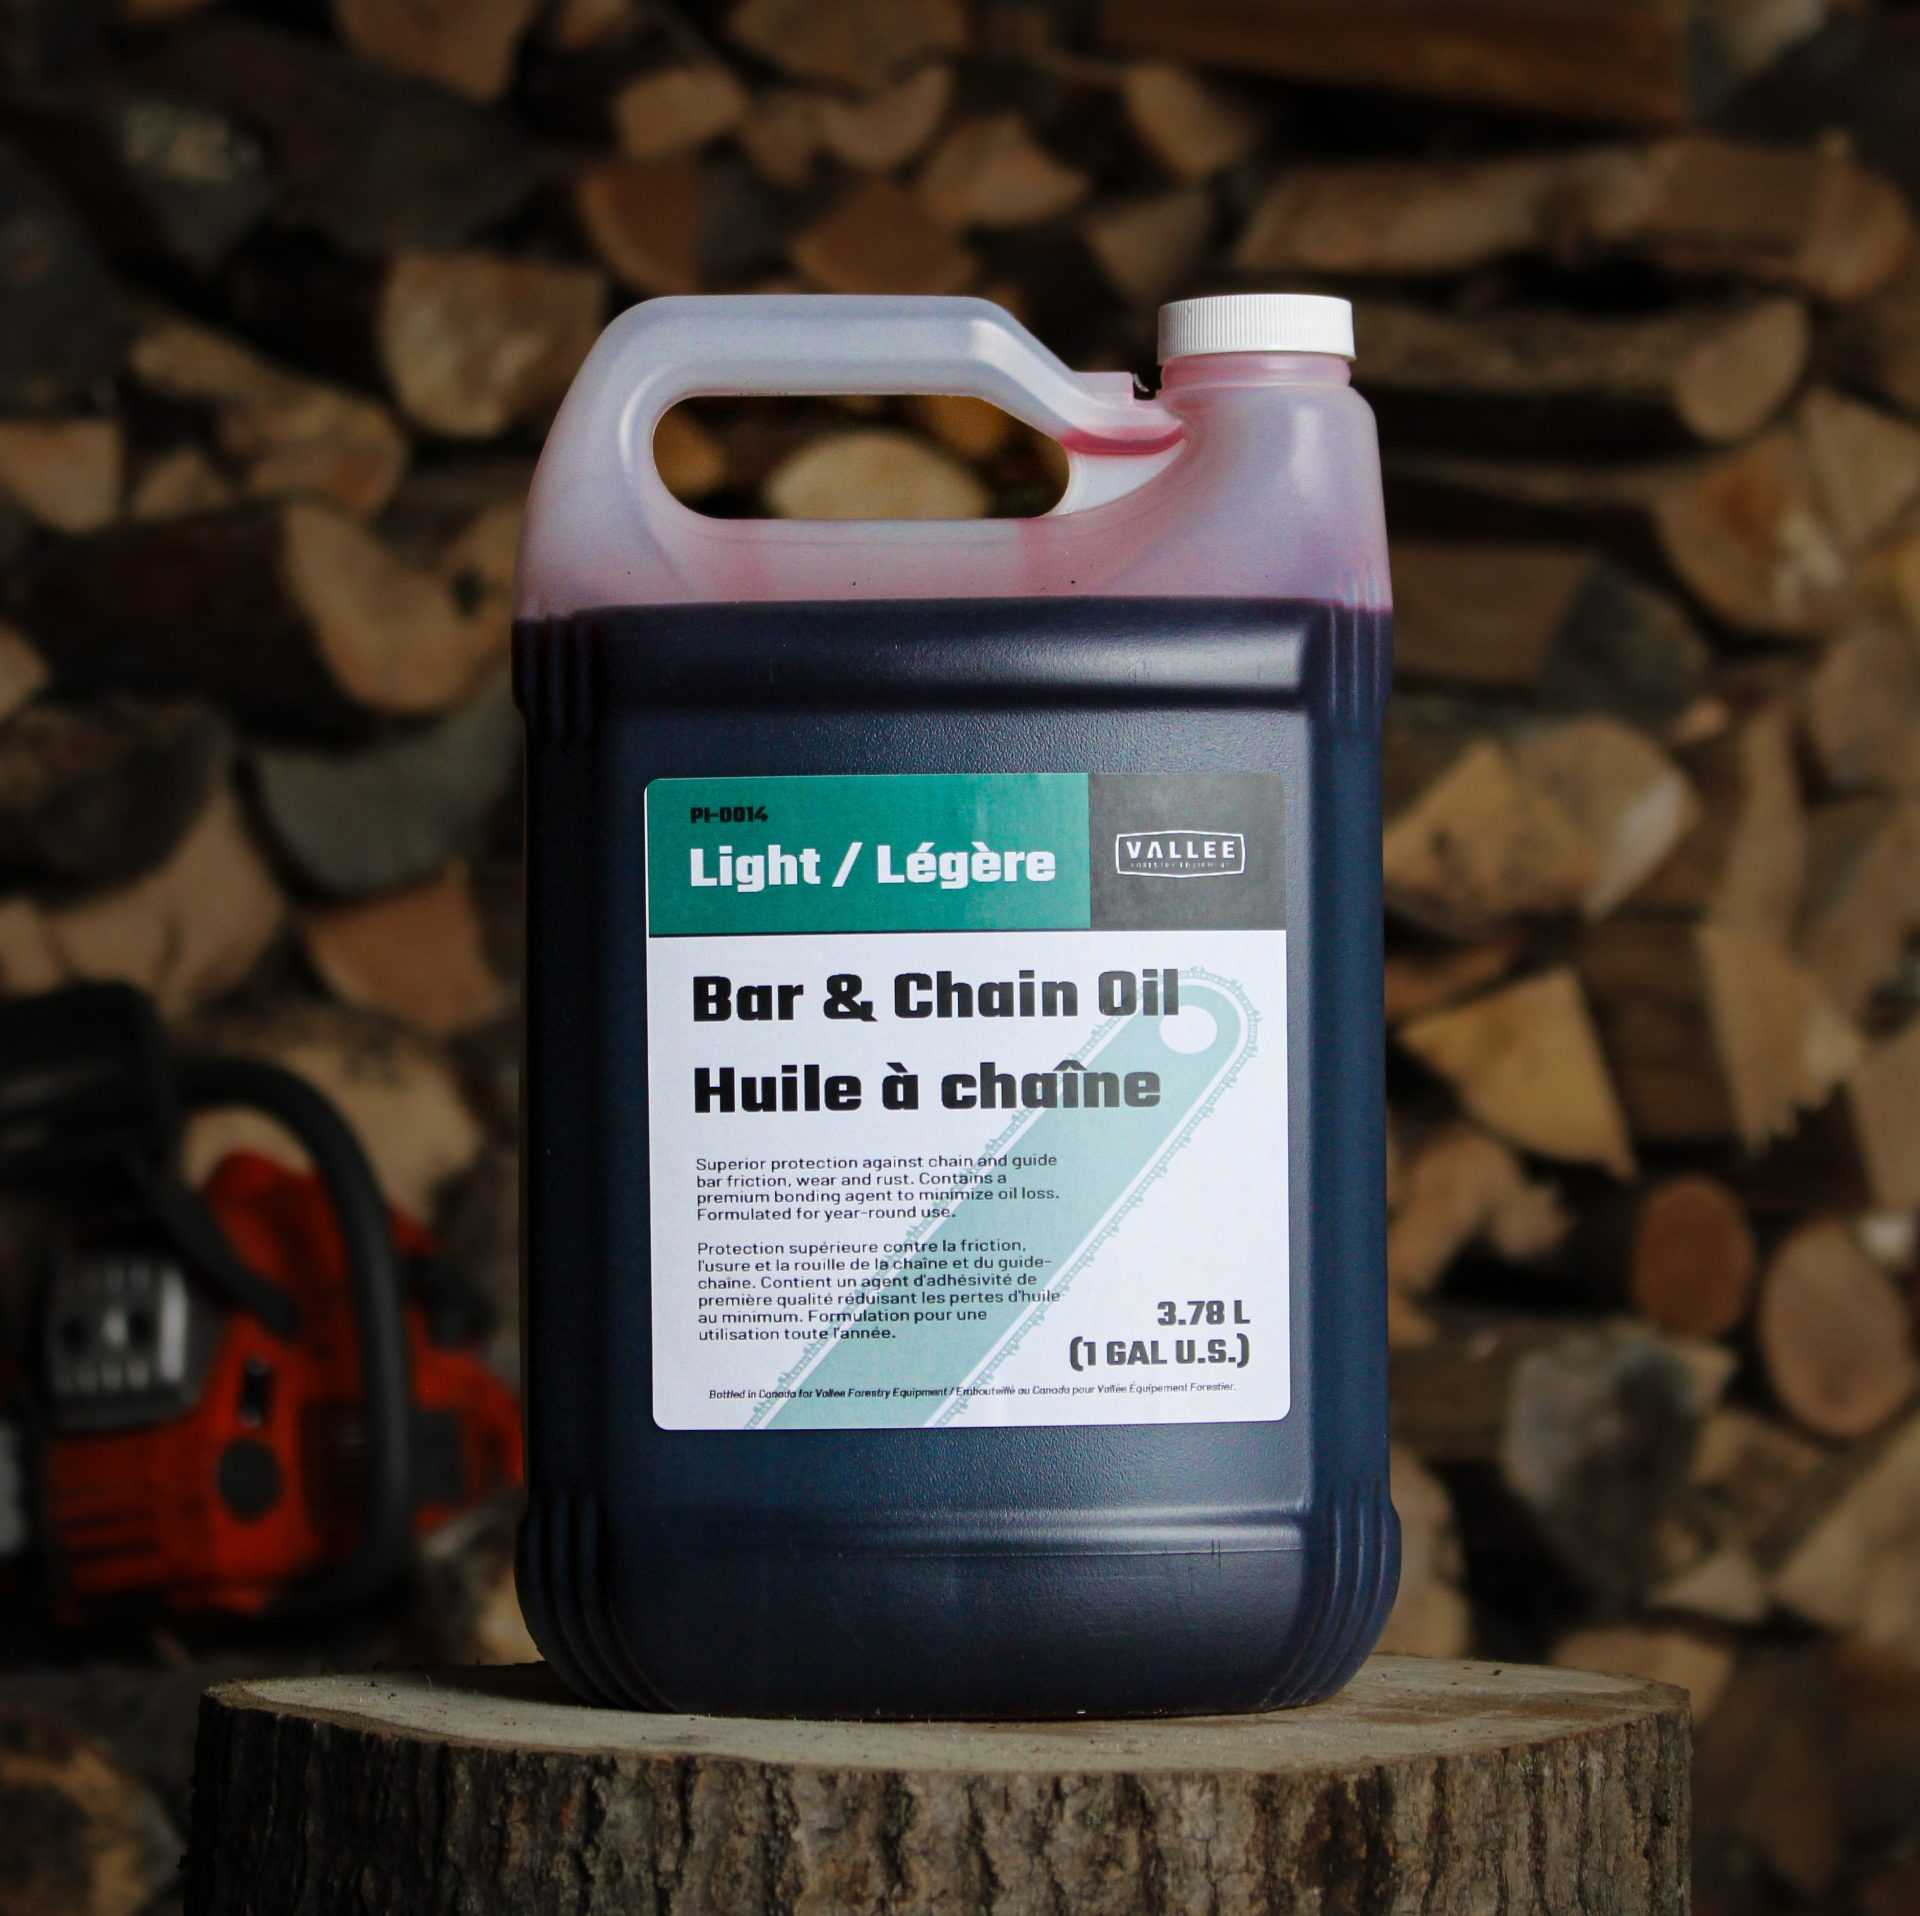 Bar & Chain Oil for Chainsaw (3.78 L / 1 Gal.)